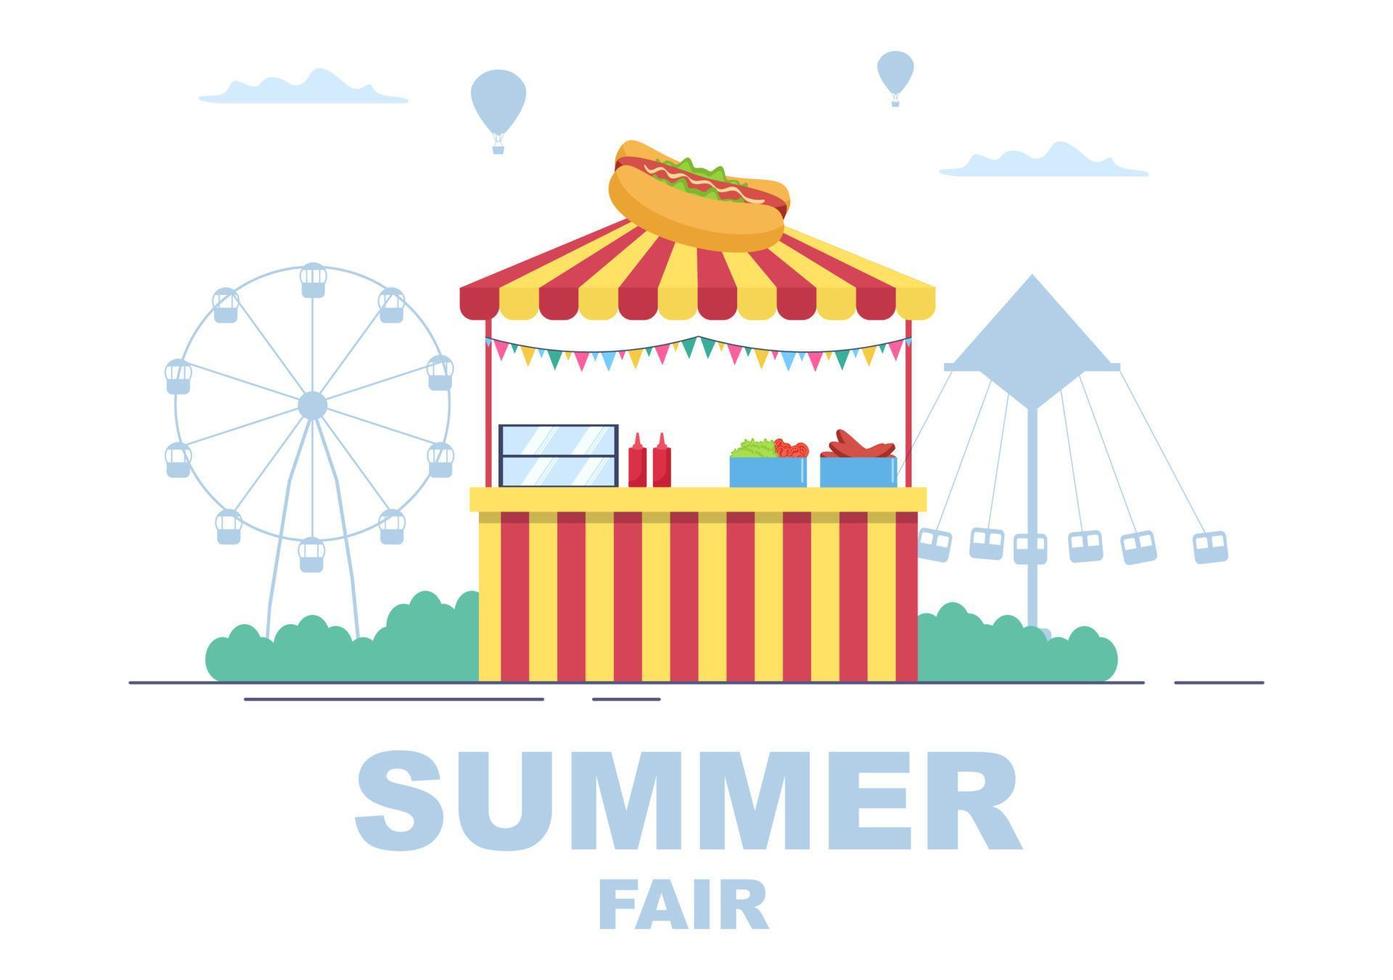 Sommerfest mit Karneval, Zirkus, Kirmes oder Vergnügungspark. Landschaft von Karussells, Achterbahn, Luftballon und Spielplatzvektorillustration vektor